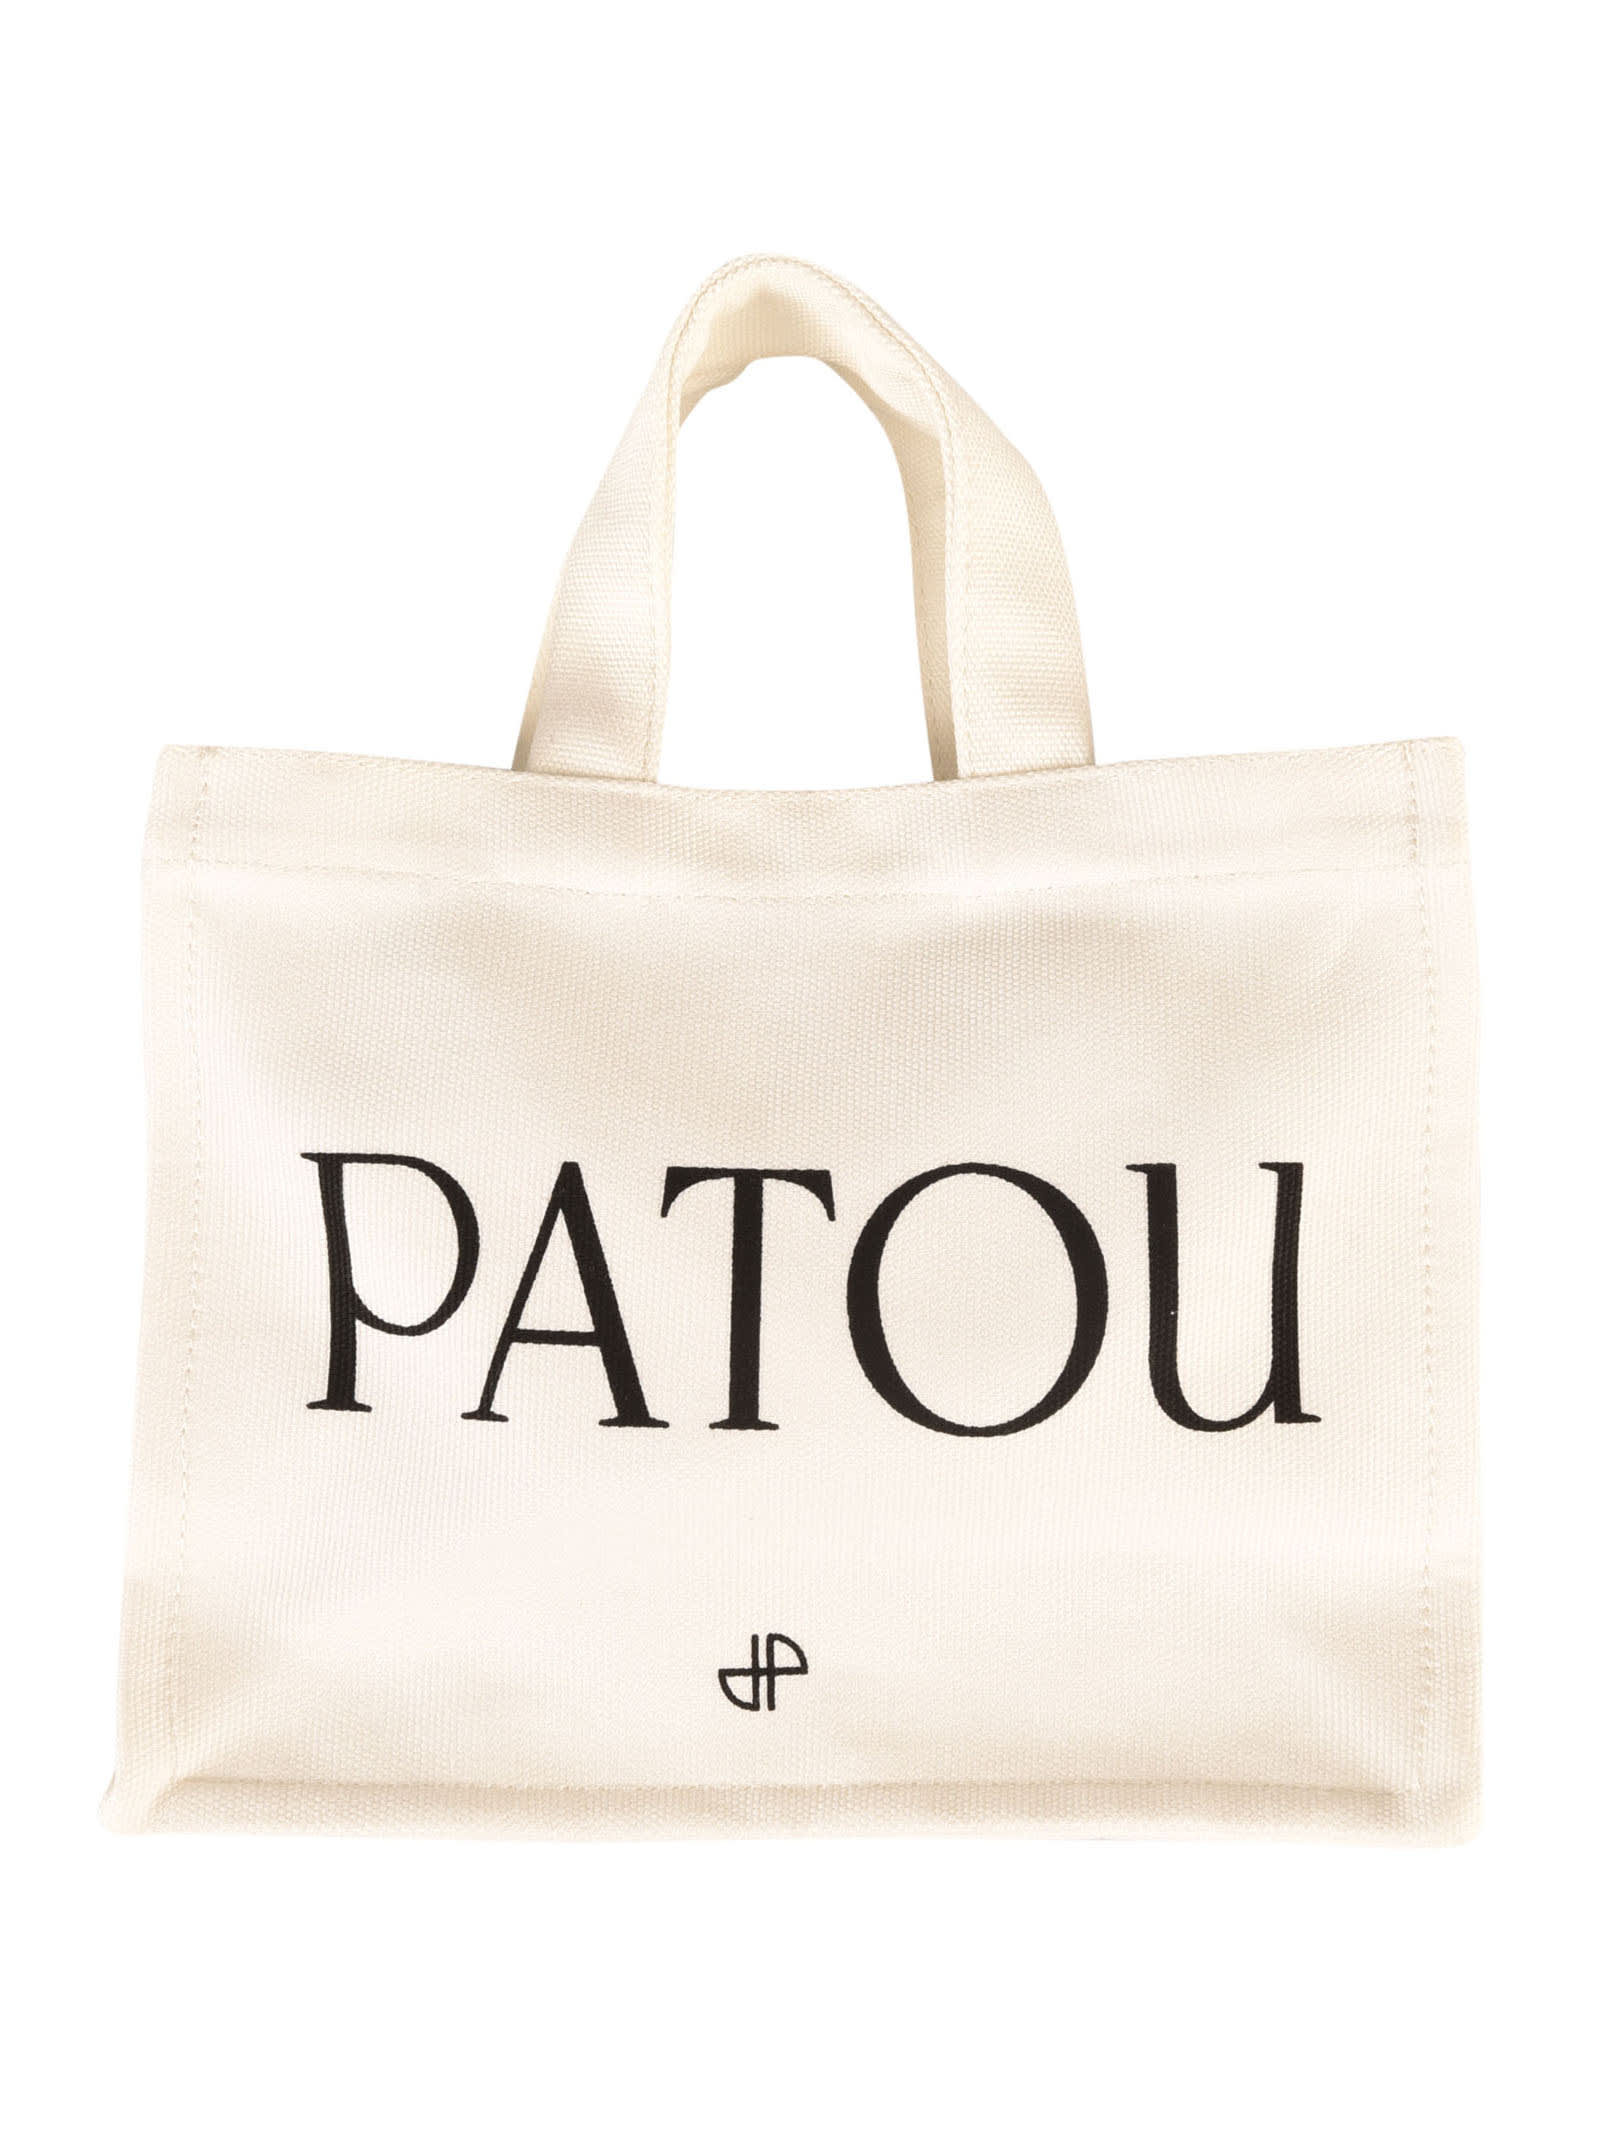 Patou Print Small Tote In White